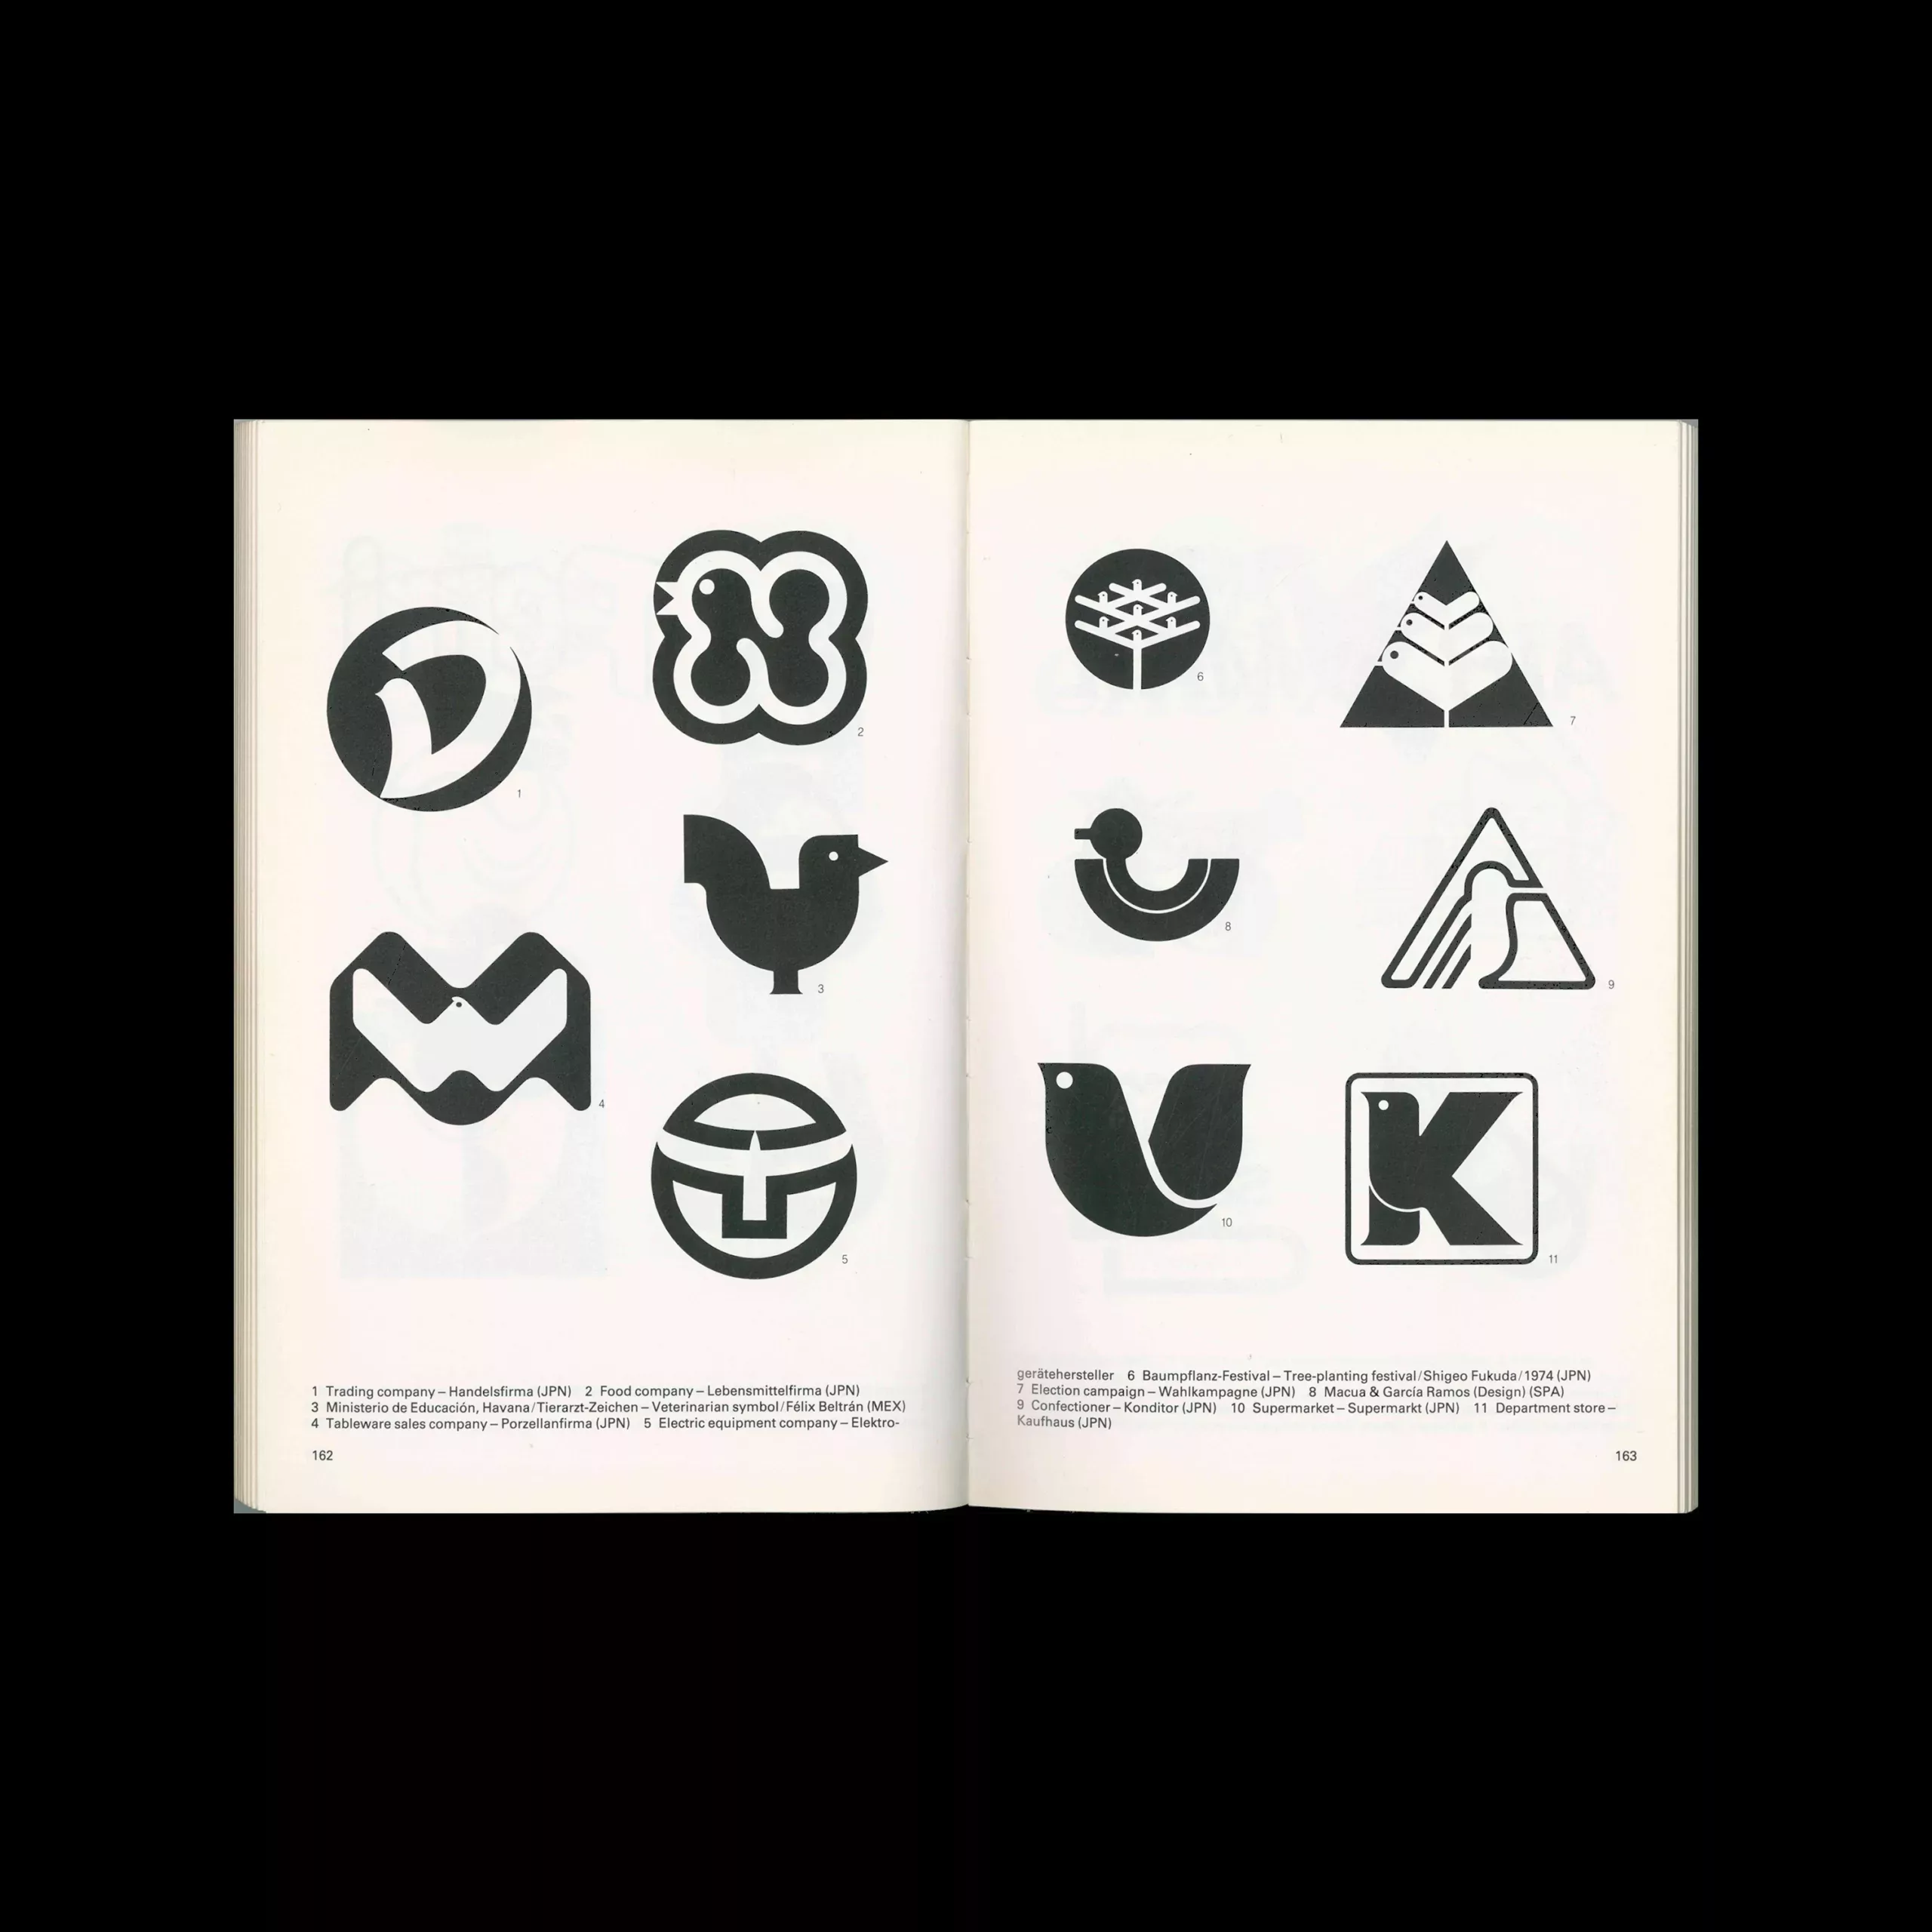 Signs + Emblems 2, Novum Press, 1988